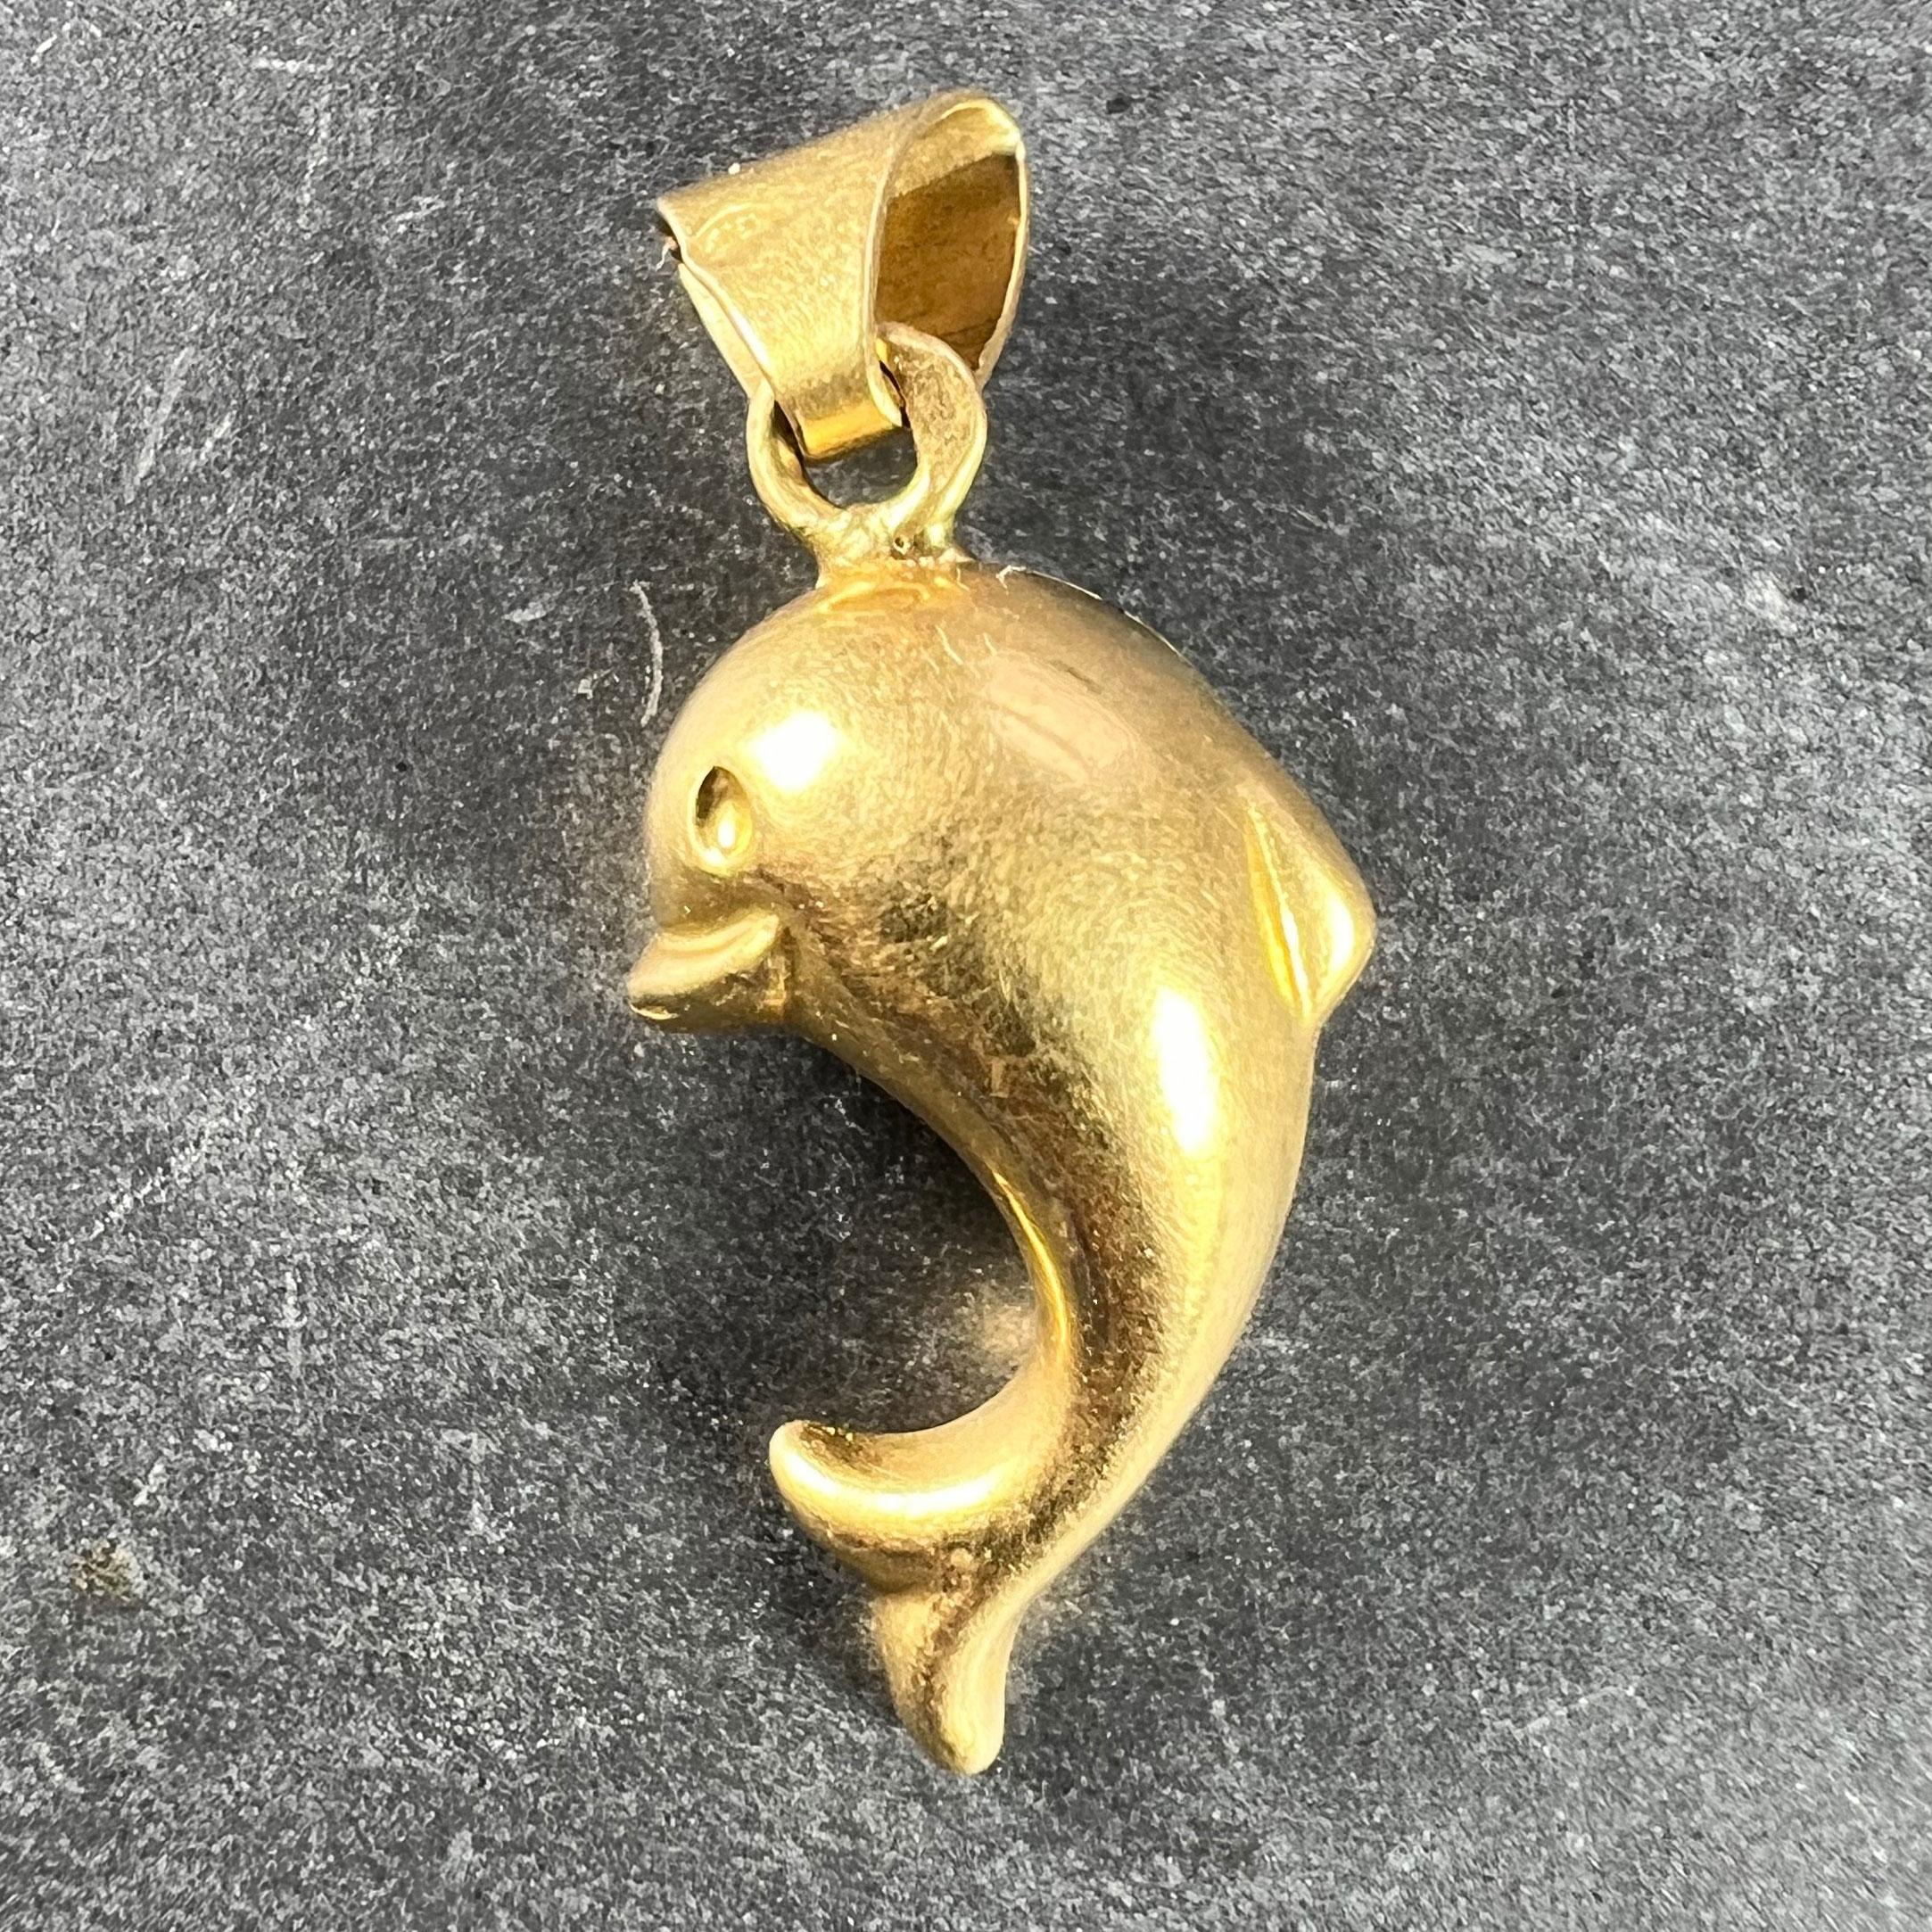 Pendentif à breloques en or jaune 18 carats (18K) conçu comme un dauphin bondissant. Estampillé de la tête d'aigle de fabrication française et de l'or 18 carats.

Dimensions : 1,9 x 1 x 0,75 cm (sans l'anneau de saut) : 1,9 x 1 x 0,75 cm (sans